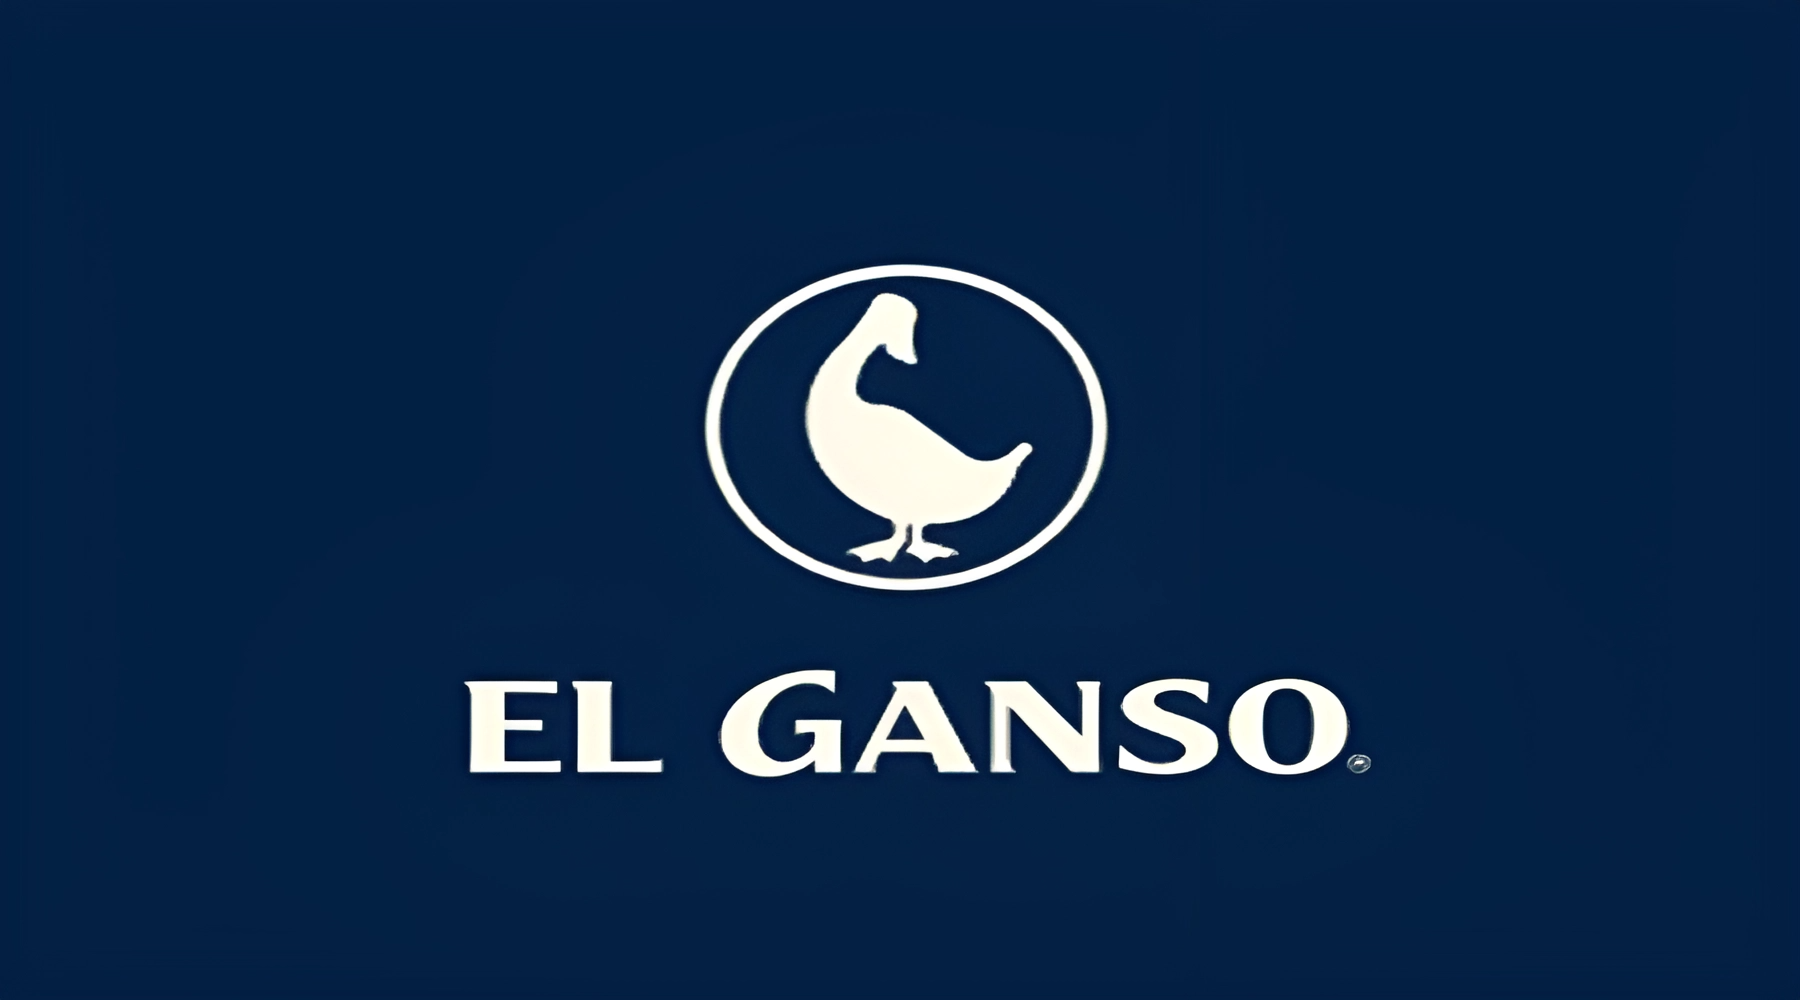 Nước hoa El Ganso của nước nào?